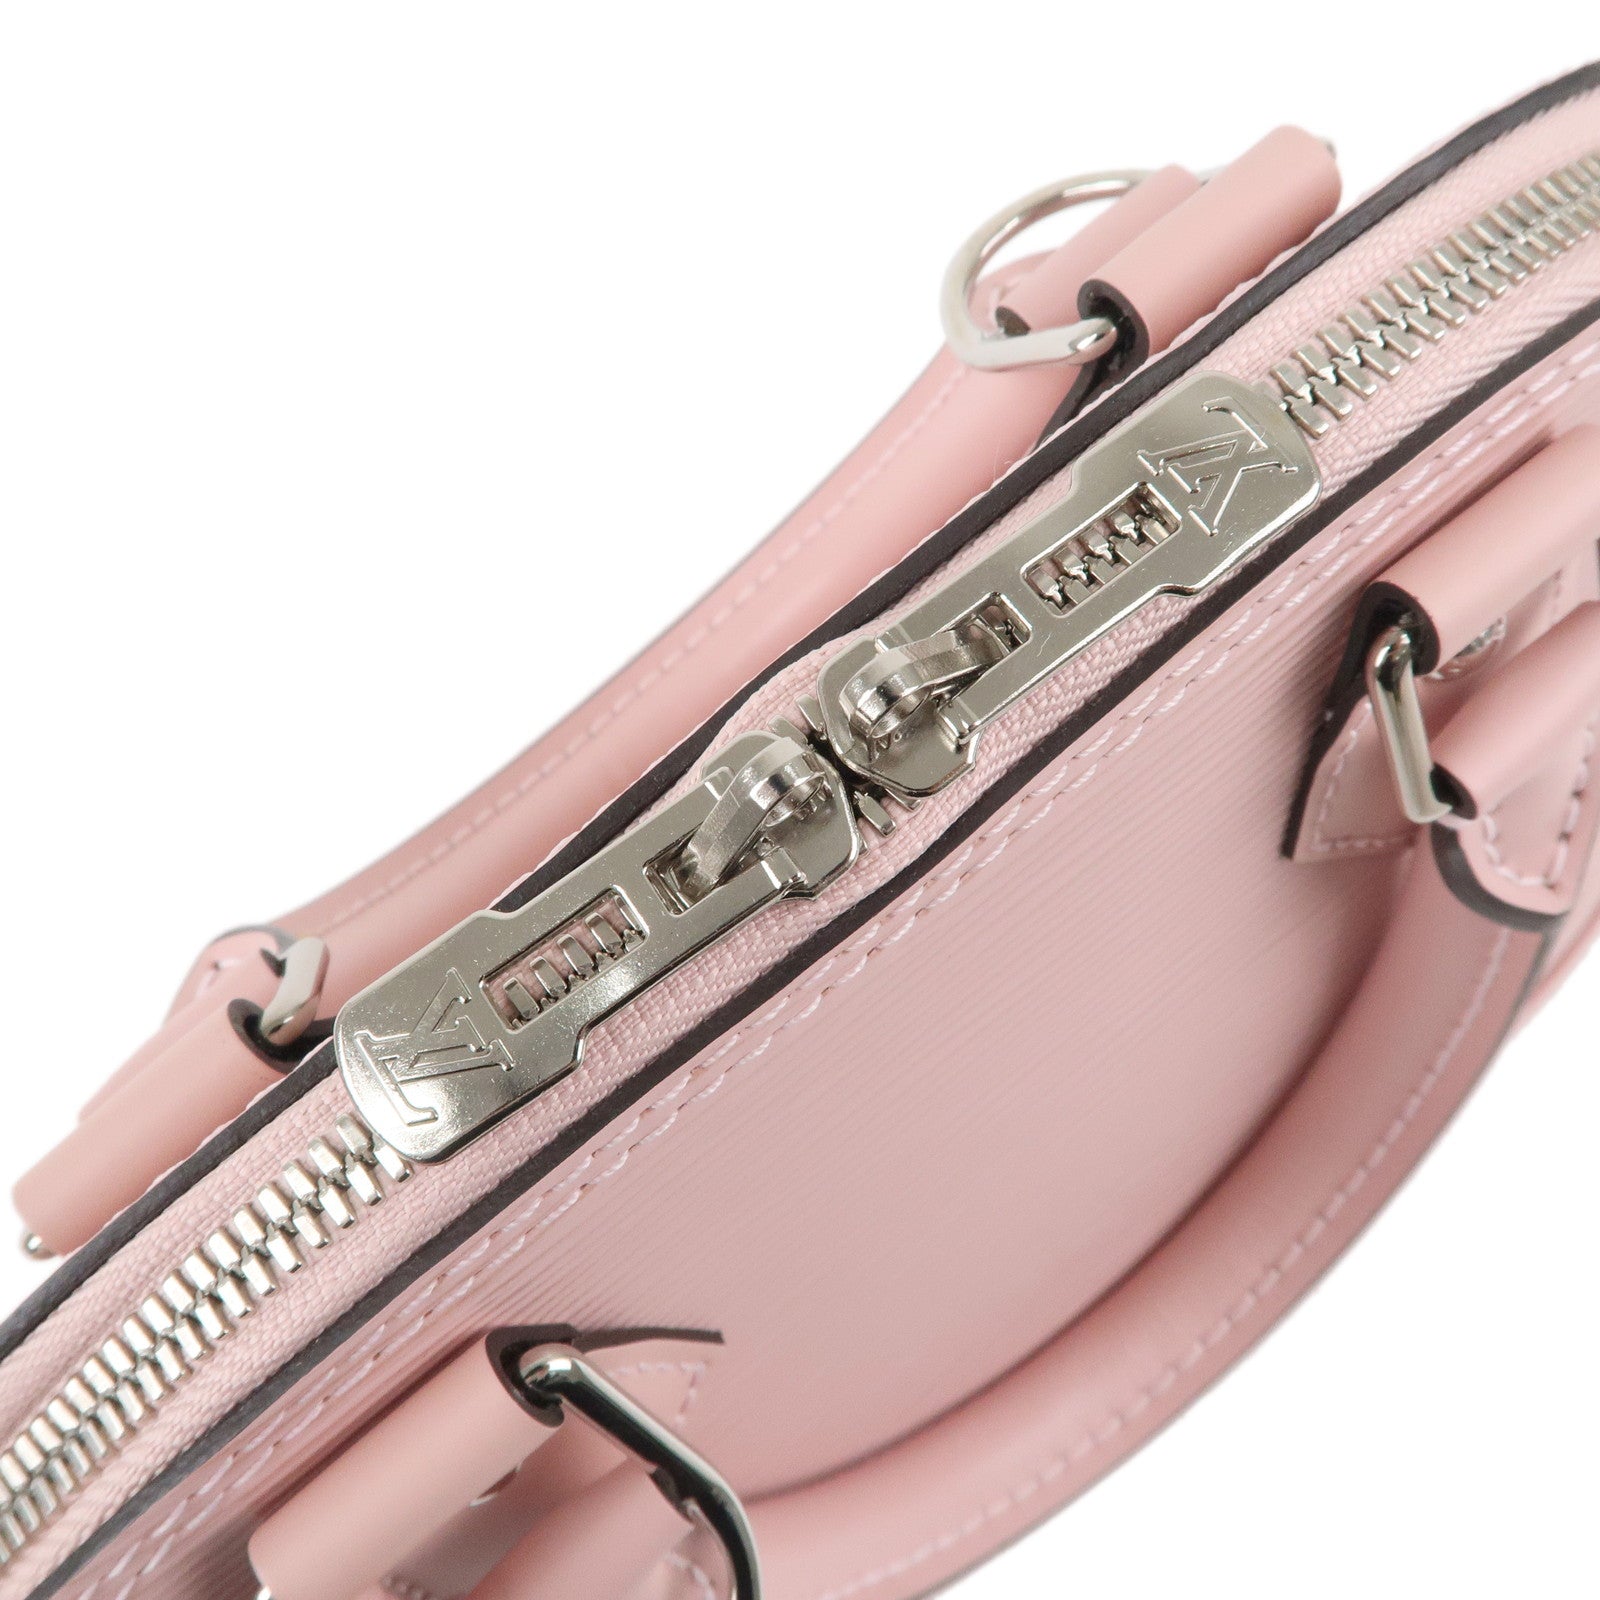 Louis-Vuitton-Epi-Alma-BB-2Way-Hand-Bag-Rose-Ballerine-M41327